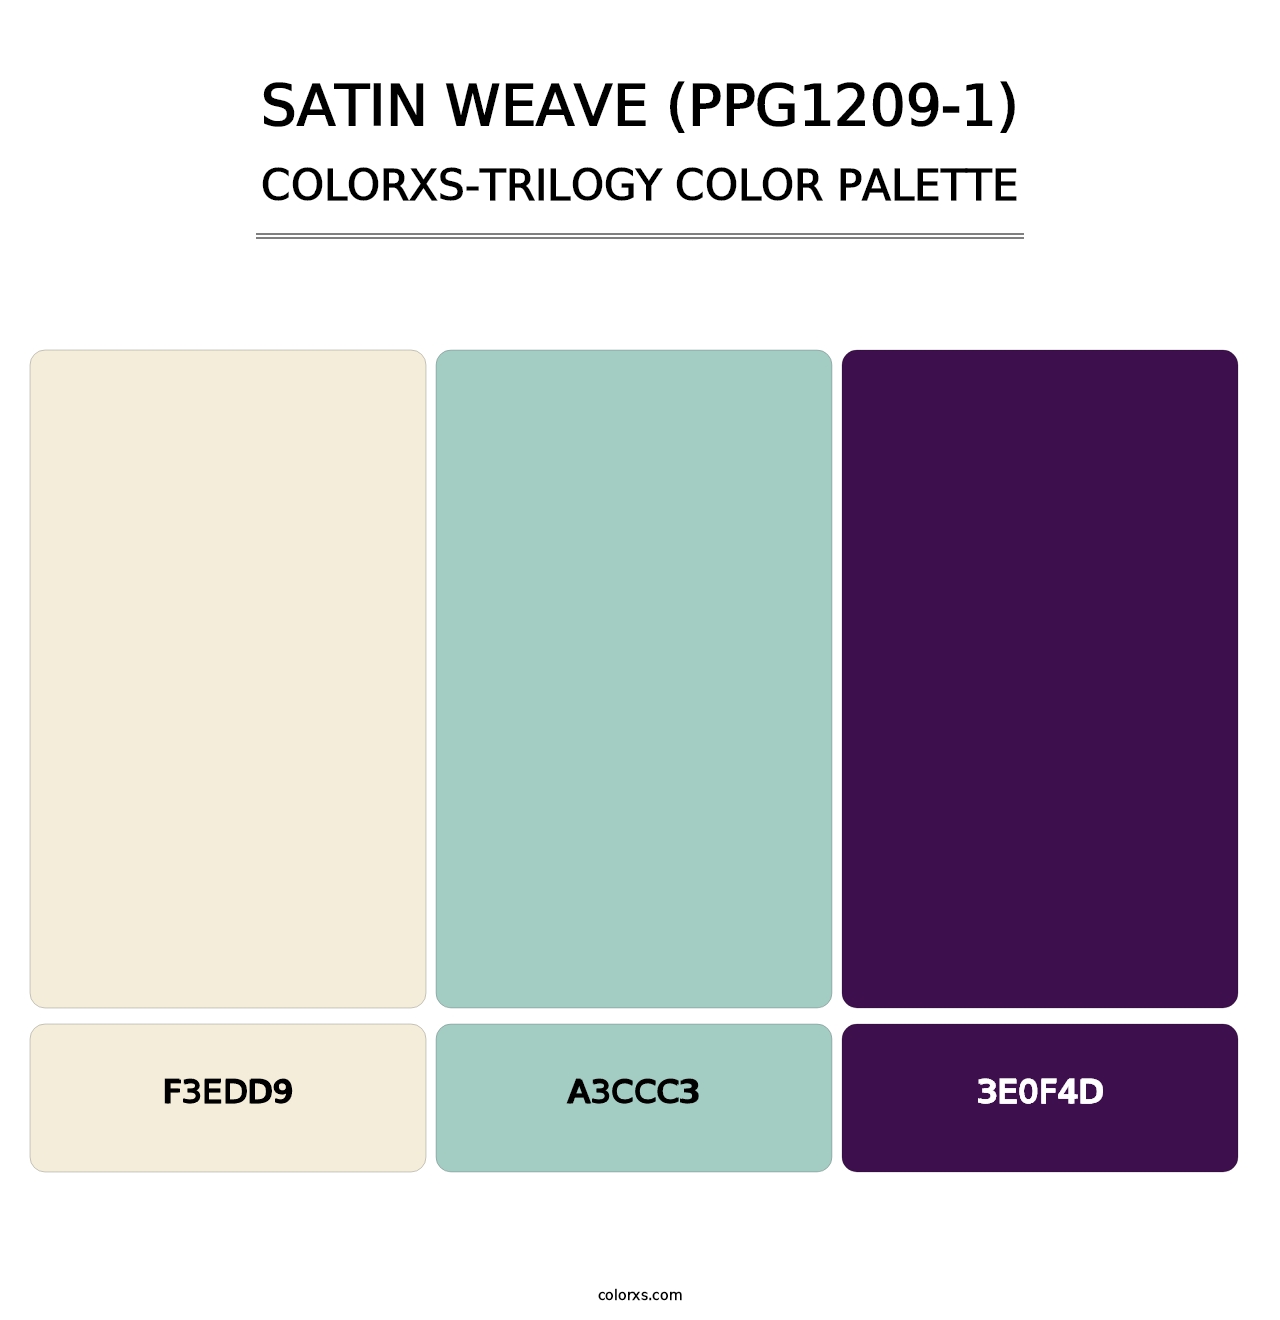 Satin Weave (PPG1209-1) - Colorxs Trilogy Palette